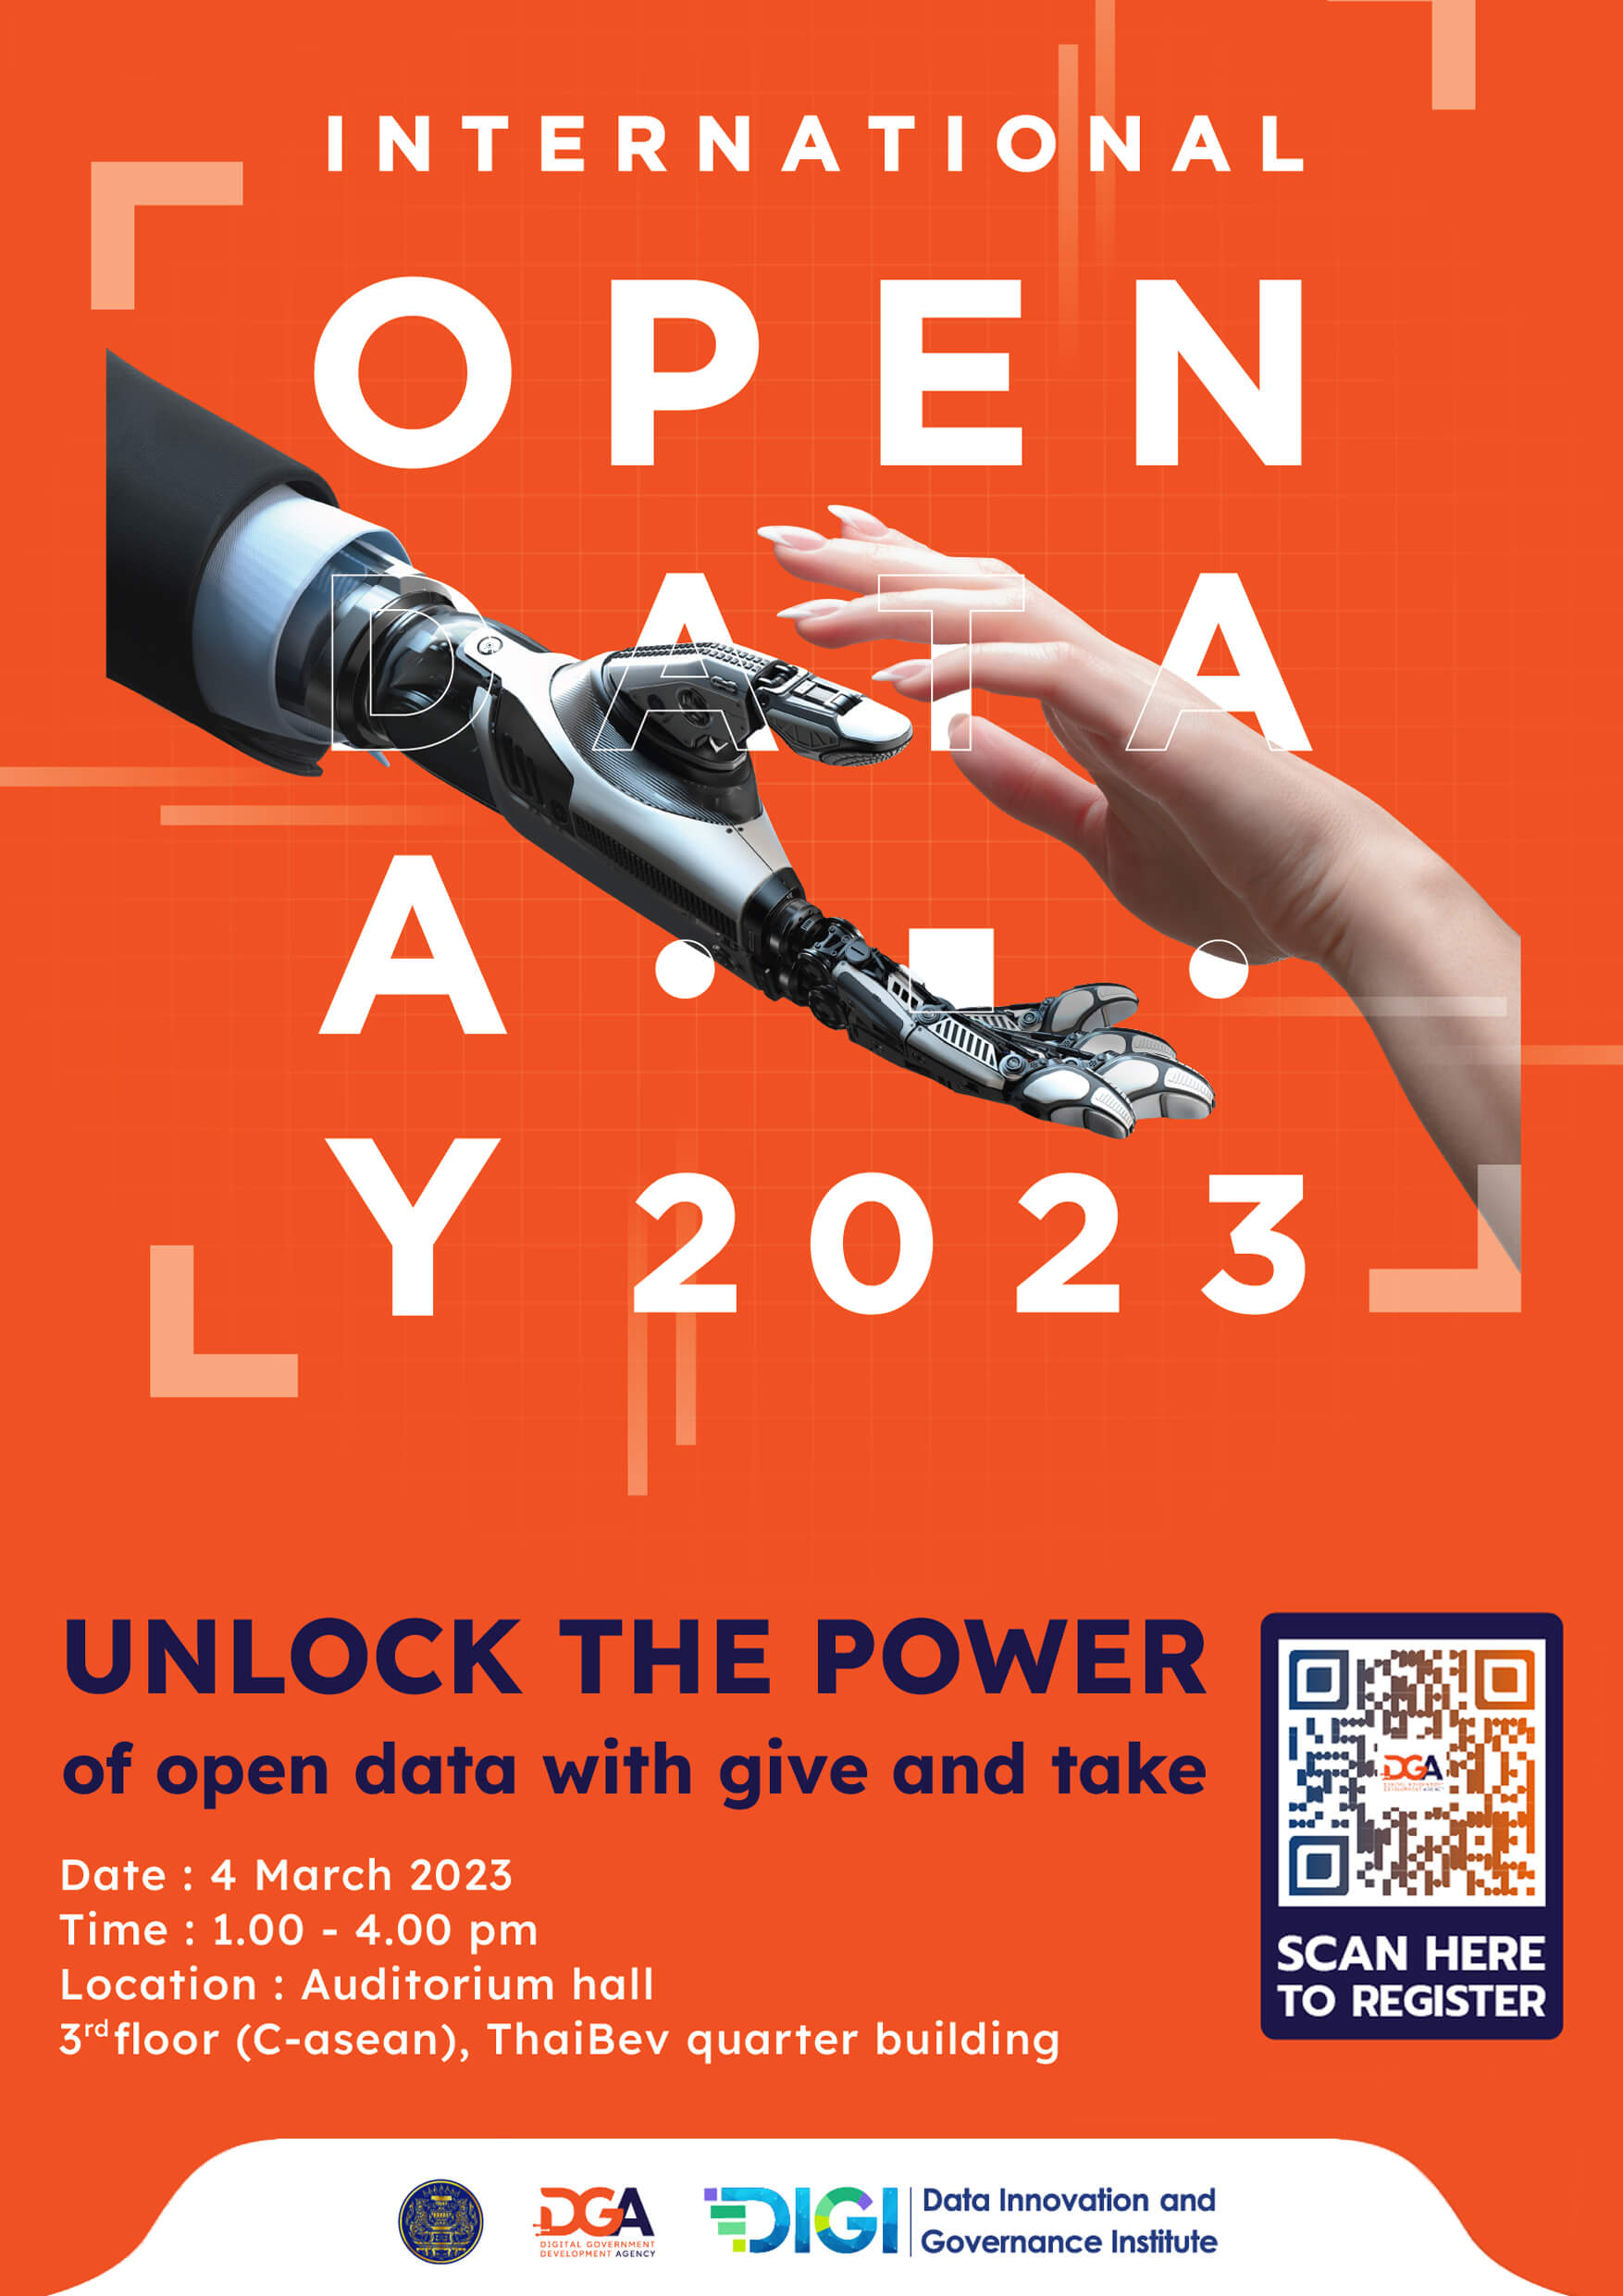 สำนักงานพัฒนารัฐบาลดิจิทัล (องค์การมหาชน) โดย สถาบันนวัตกรรมและธรรมาภิบาลข้อมูล (Data Innovation and Governance Institute) จัดงาน วันข้อมูลเปิดนานาชาติ ประจำปี 2566 International Open Data Day 2023